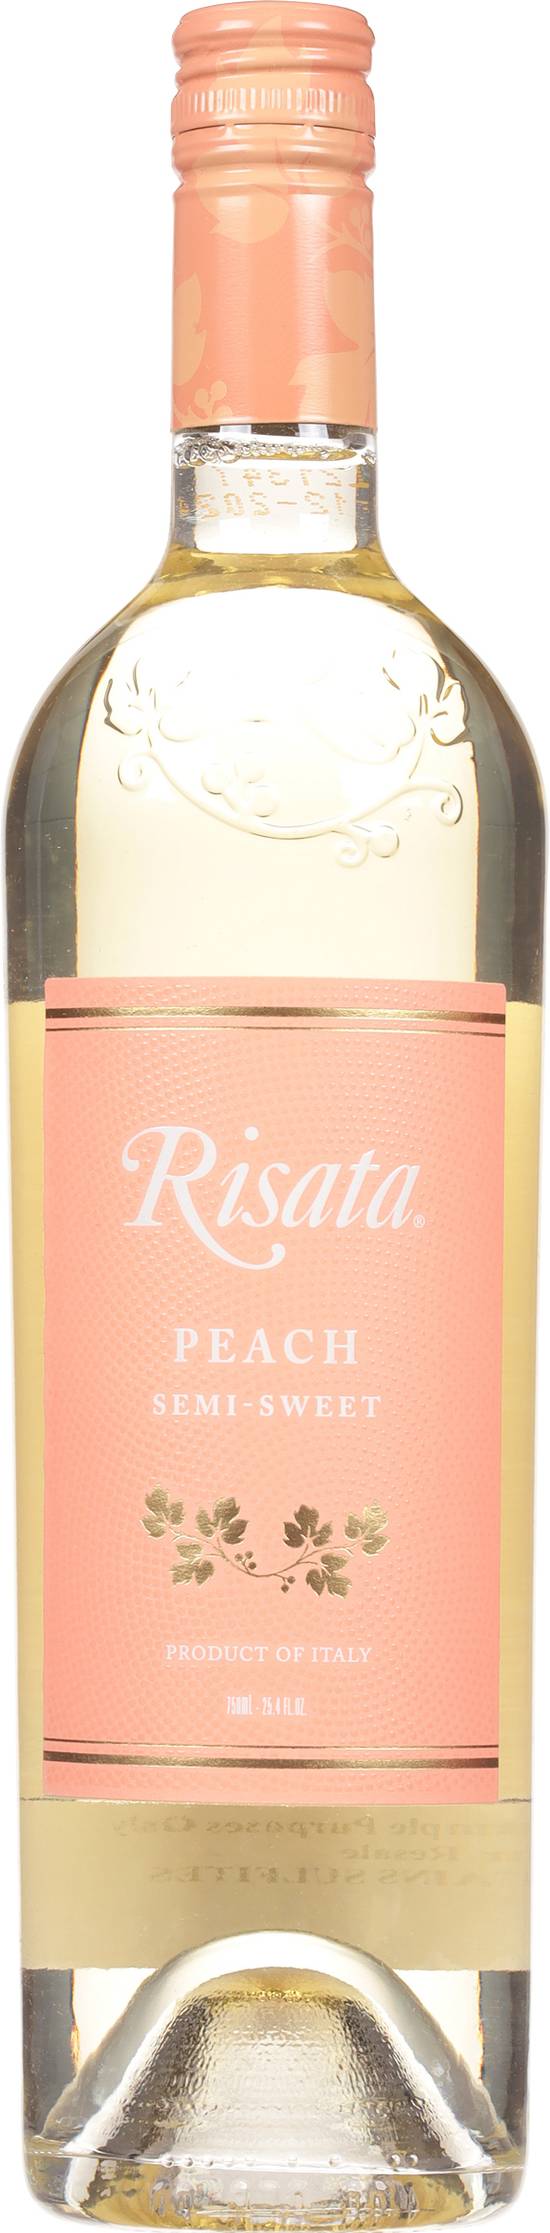 Risata Peach Semi Sweet Moscato (750ml bottle)